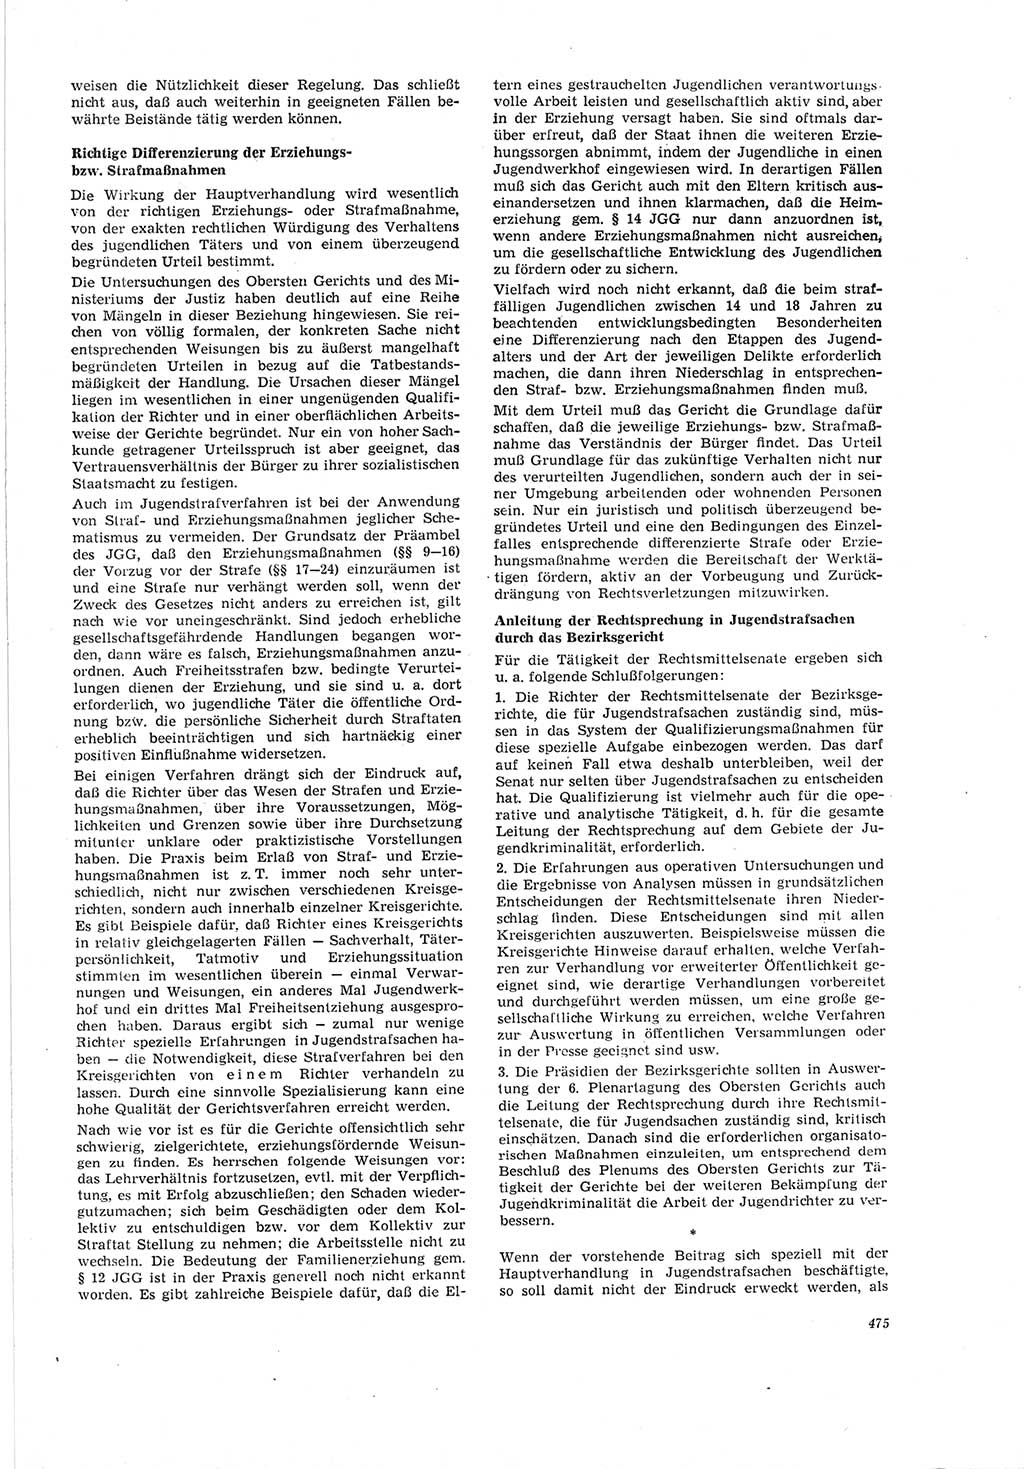 Neue Justiz (NJ), Zeitschrift für Recht und Rechtswissenschaft [Deutsche Demokratische Republik (DDR)], 19. Jahrgang 1965, Seite 475 (NJ DDR 1965, S. 475)